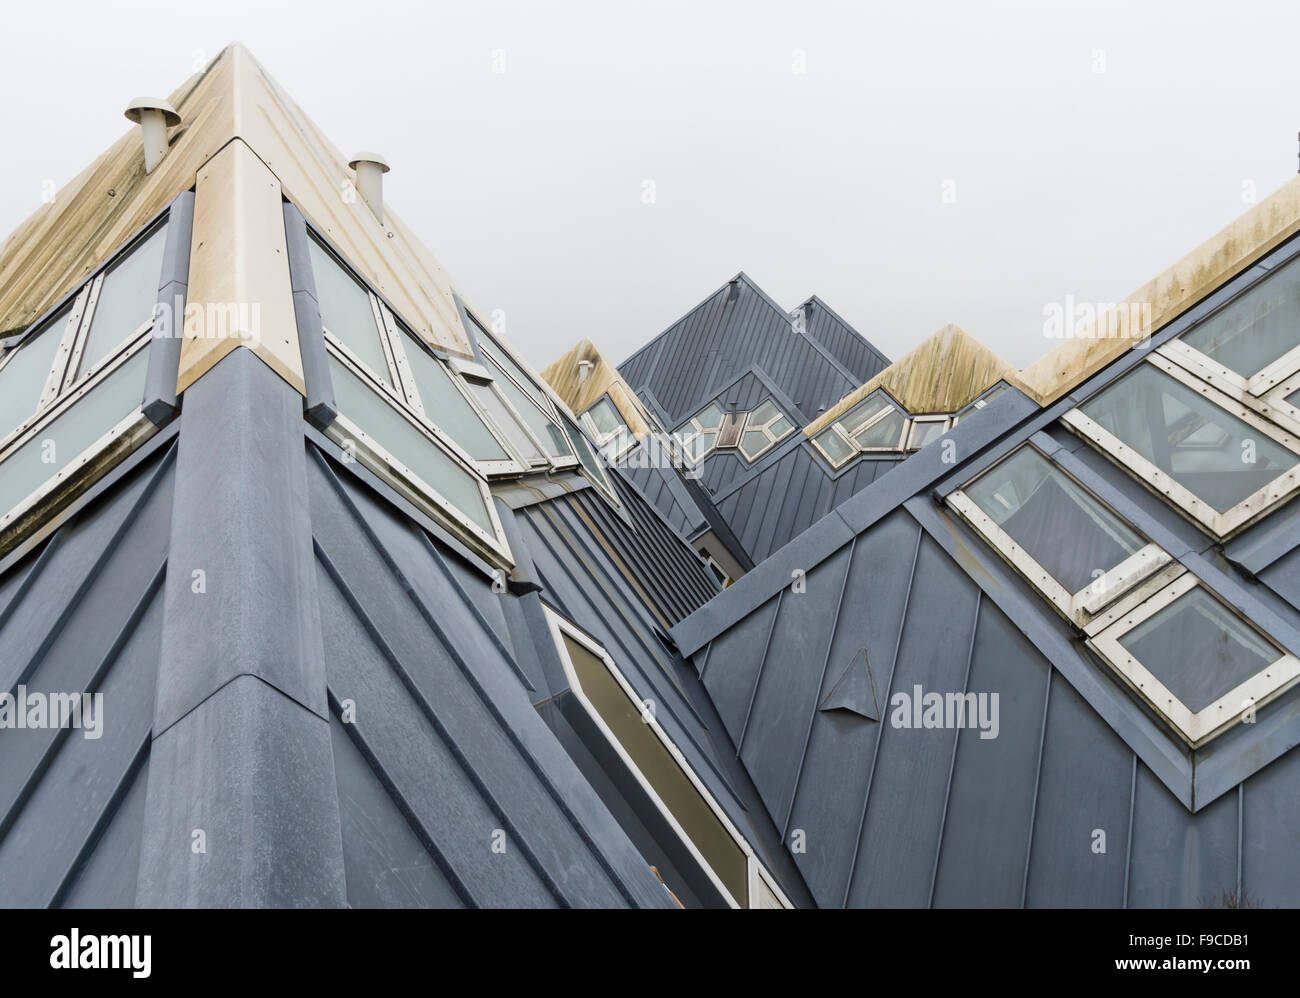 Les maisons cubiques (Kubuswoningen) de l'architecte Piet Blom à Rotterdam, Pays-Bas. Banque D'Images